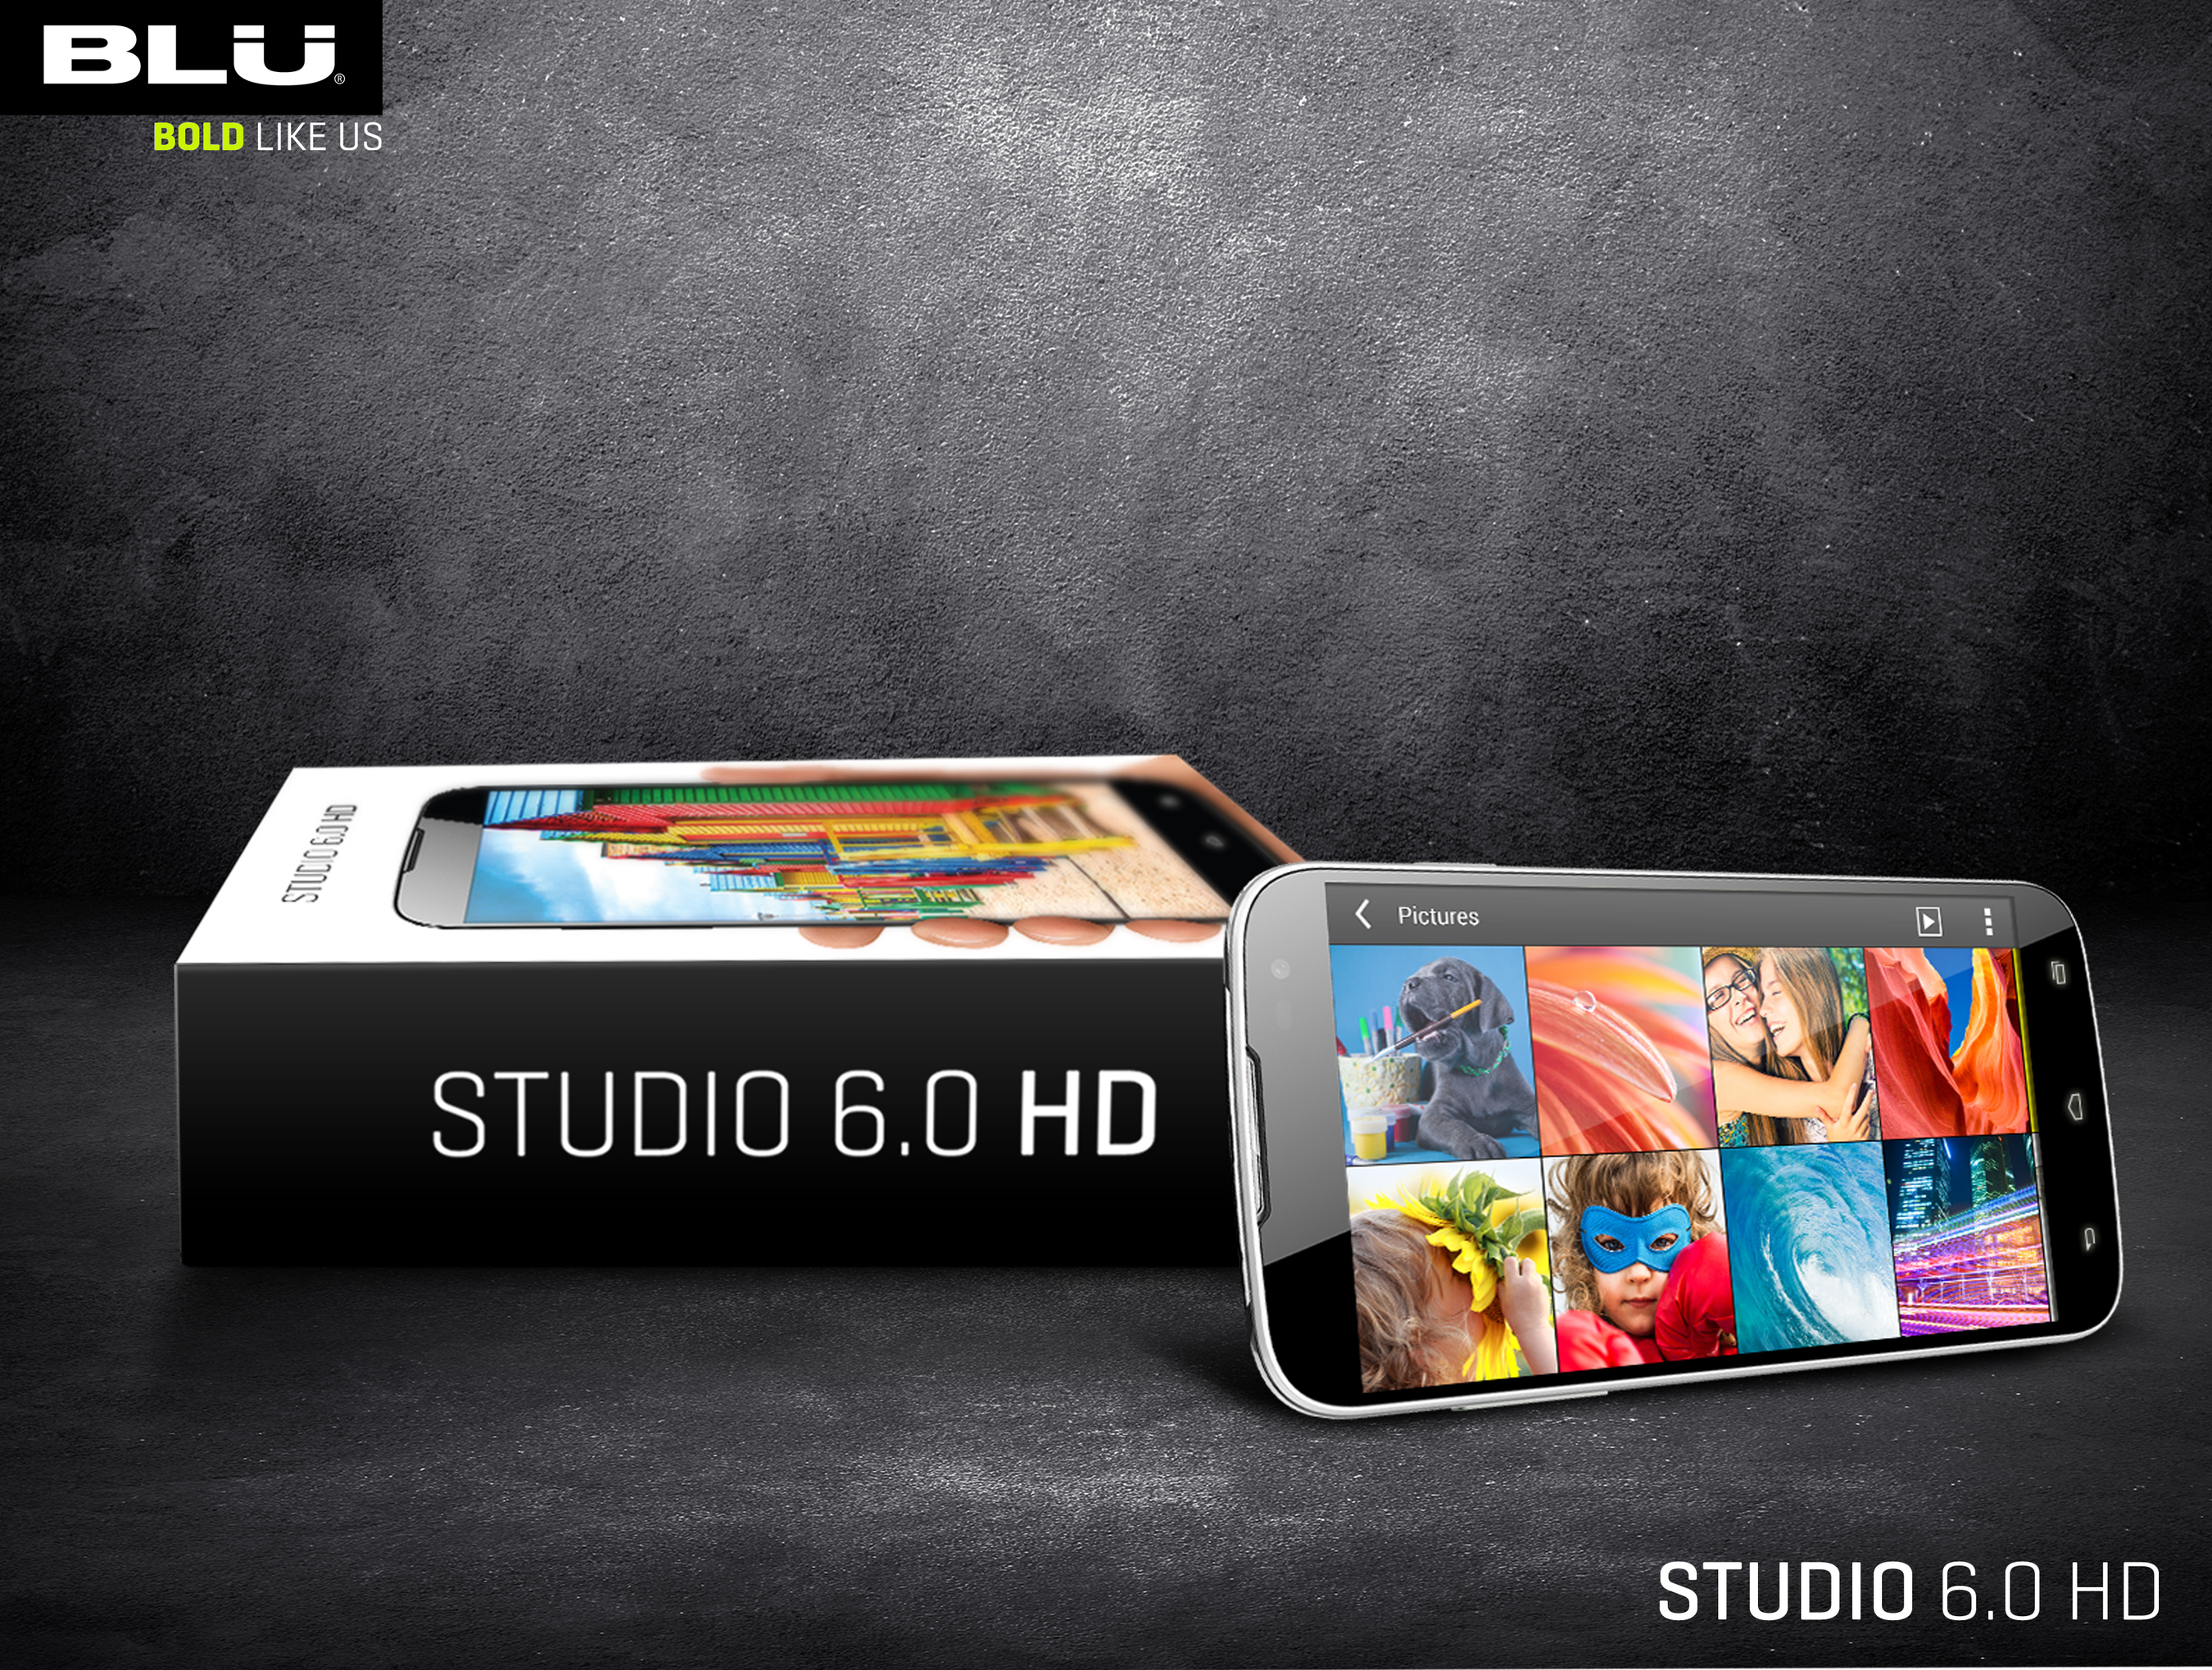 BLU Products Studio 6.0 HD (PRNewsFoto/BLU Products)